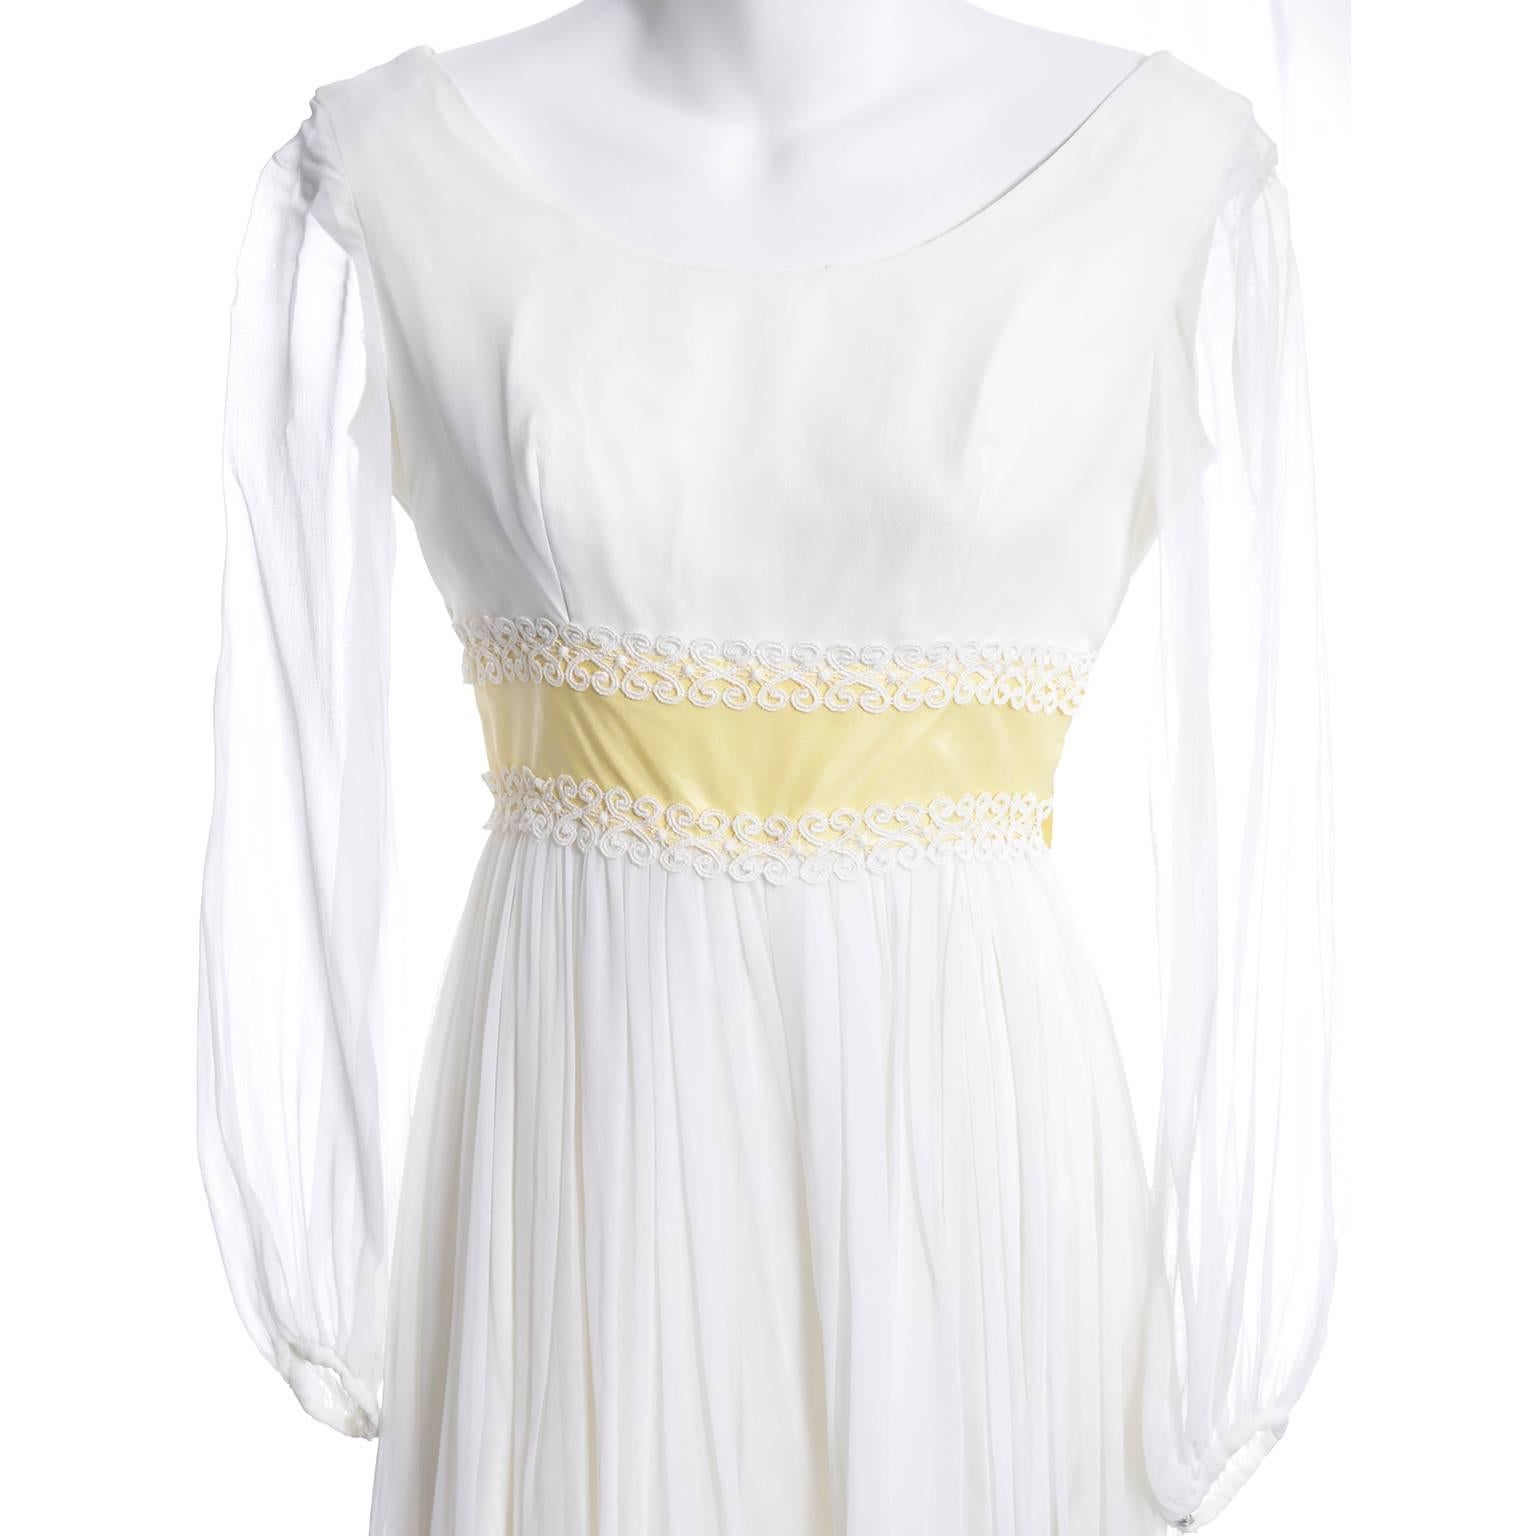 60s chiffon dress